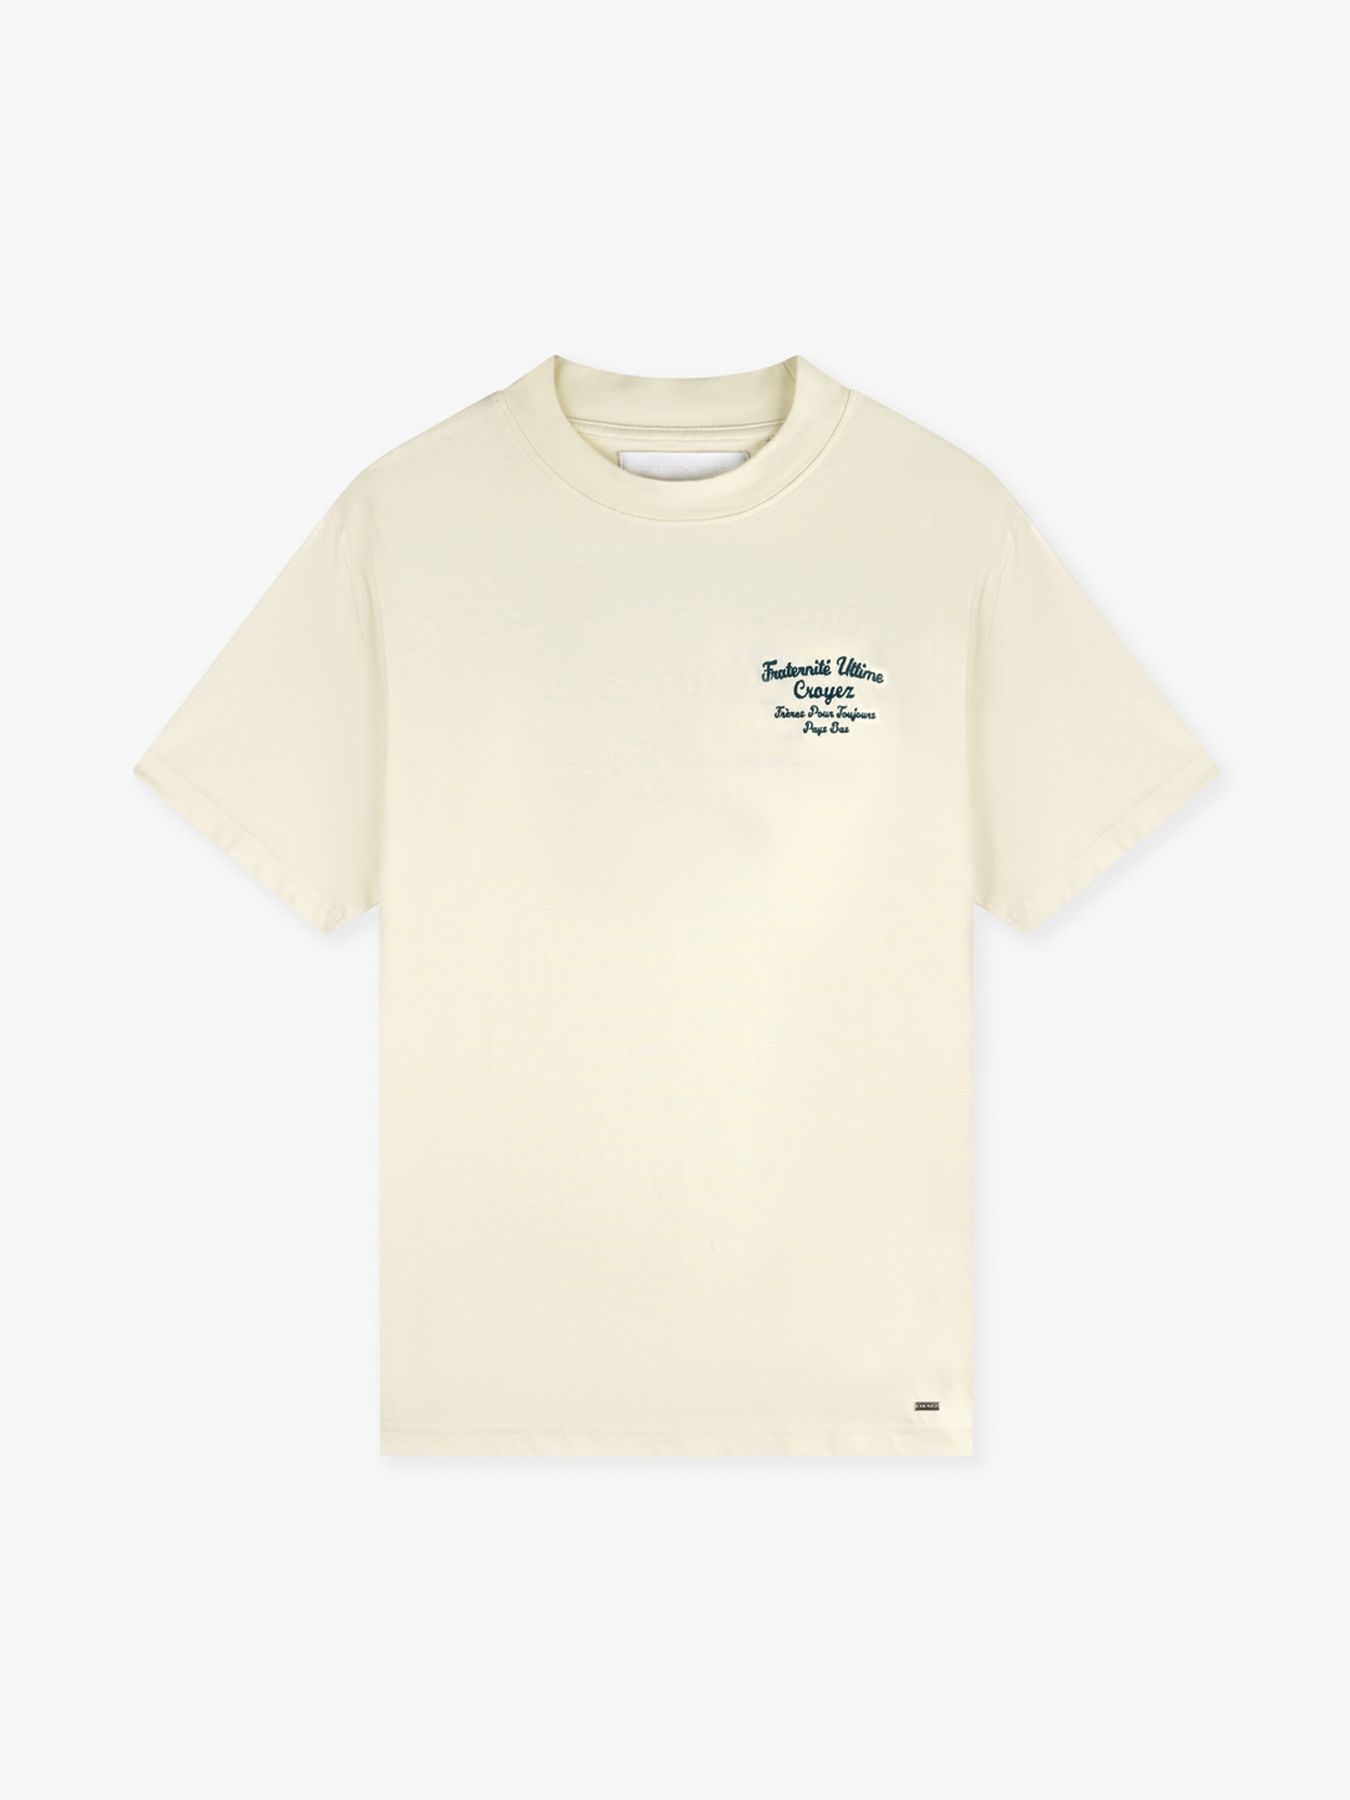 Croyez Fraternite T-shirt Buttercream-washed olive 2900147003064